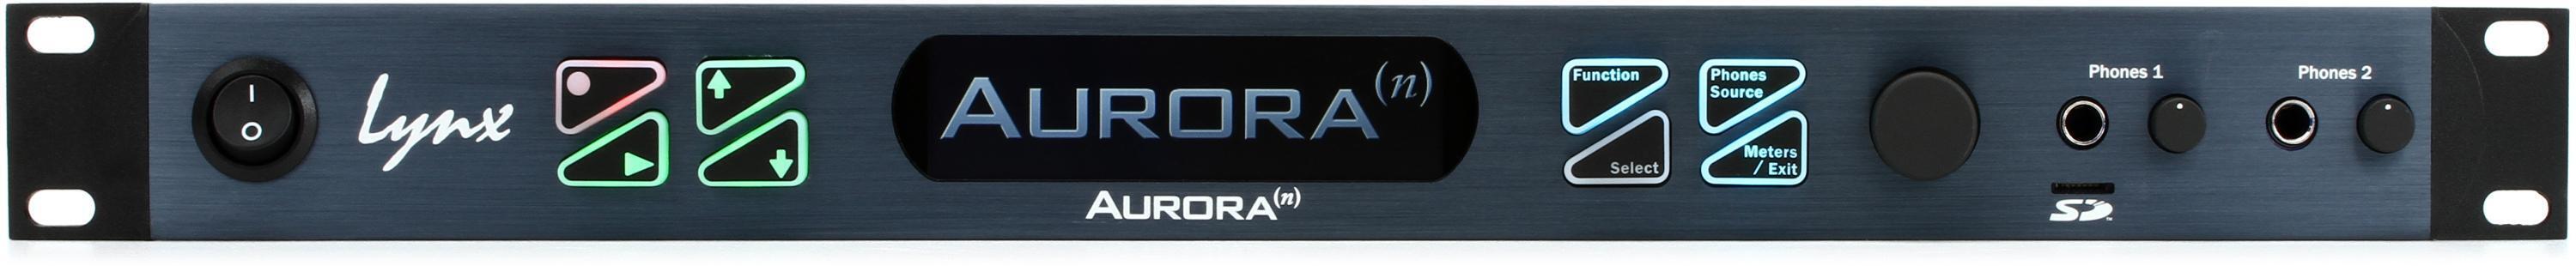 Lynx Aurora (n) 8-USB 8-channel AD/DA Converter with USB Interface 